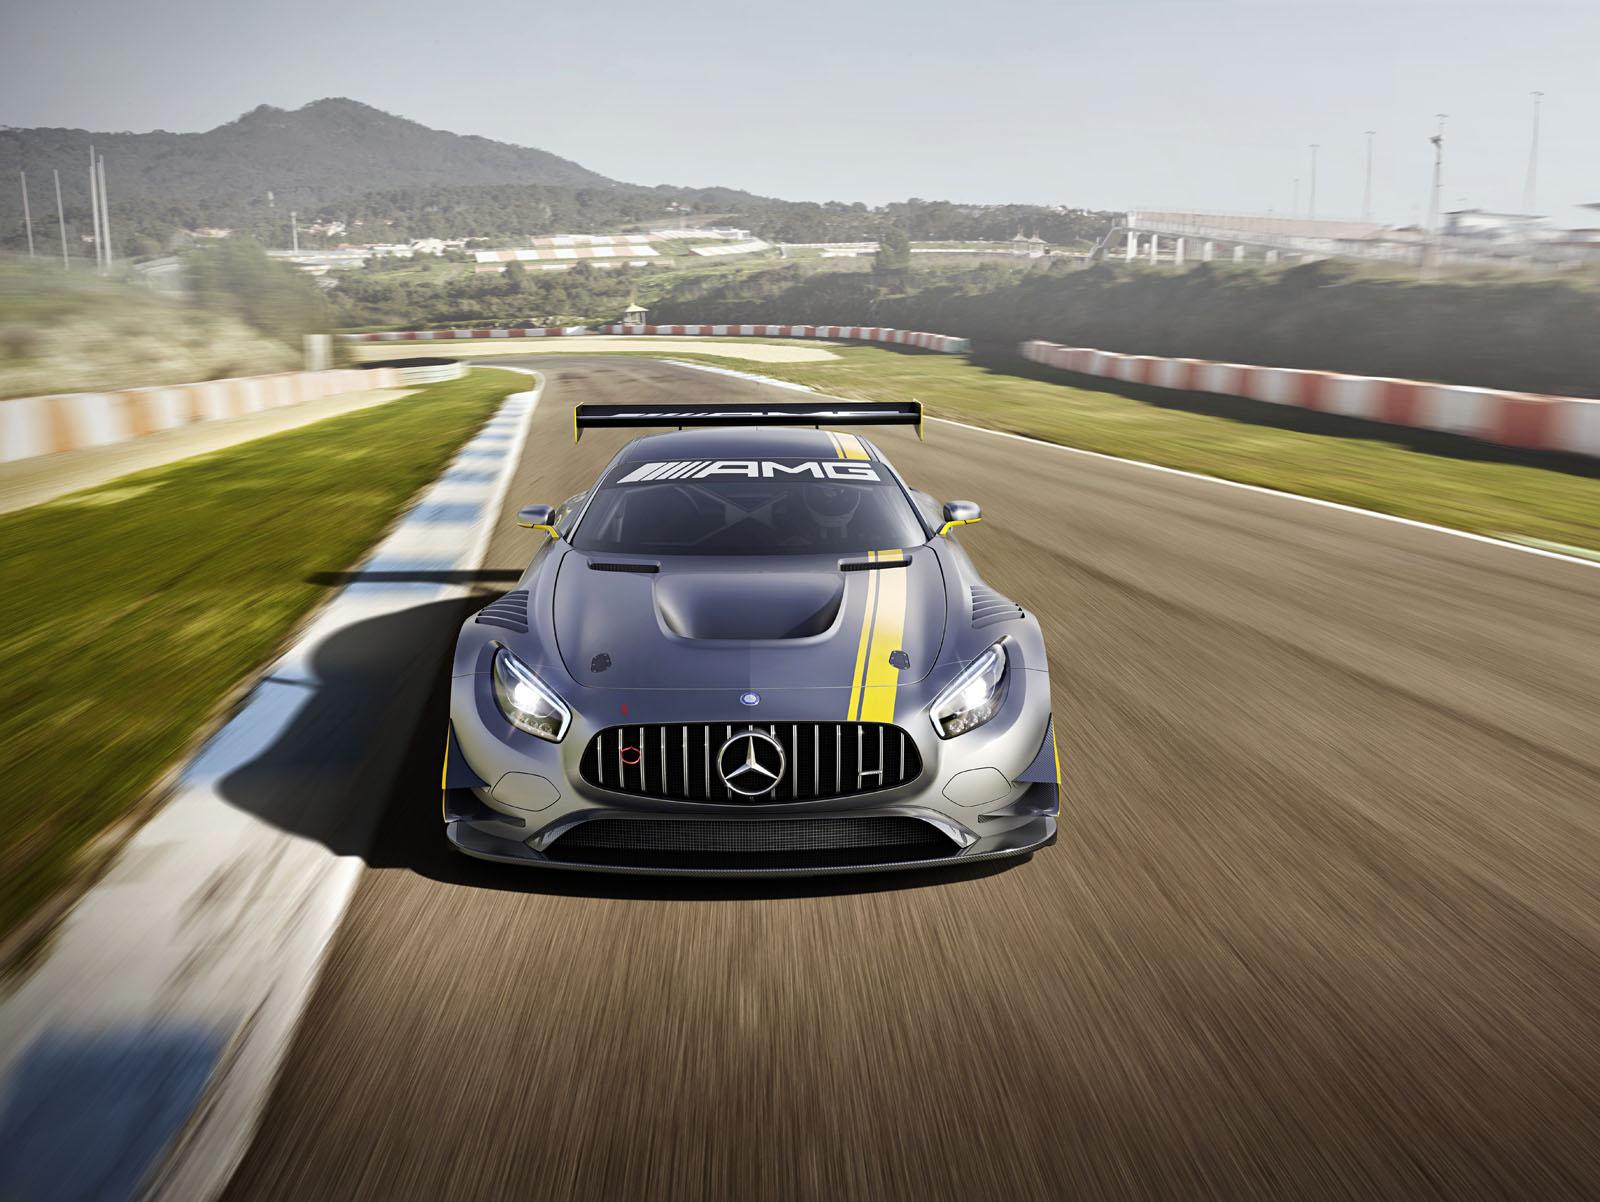 Ya conocemos el Mercedes-AMG GT3